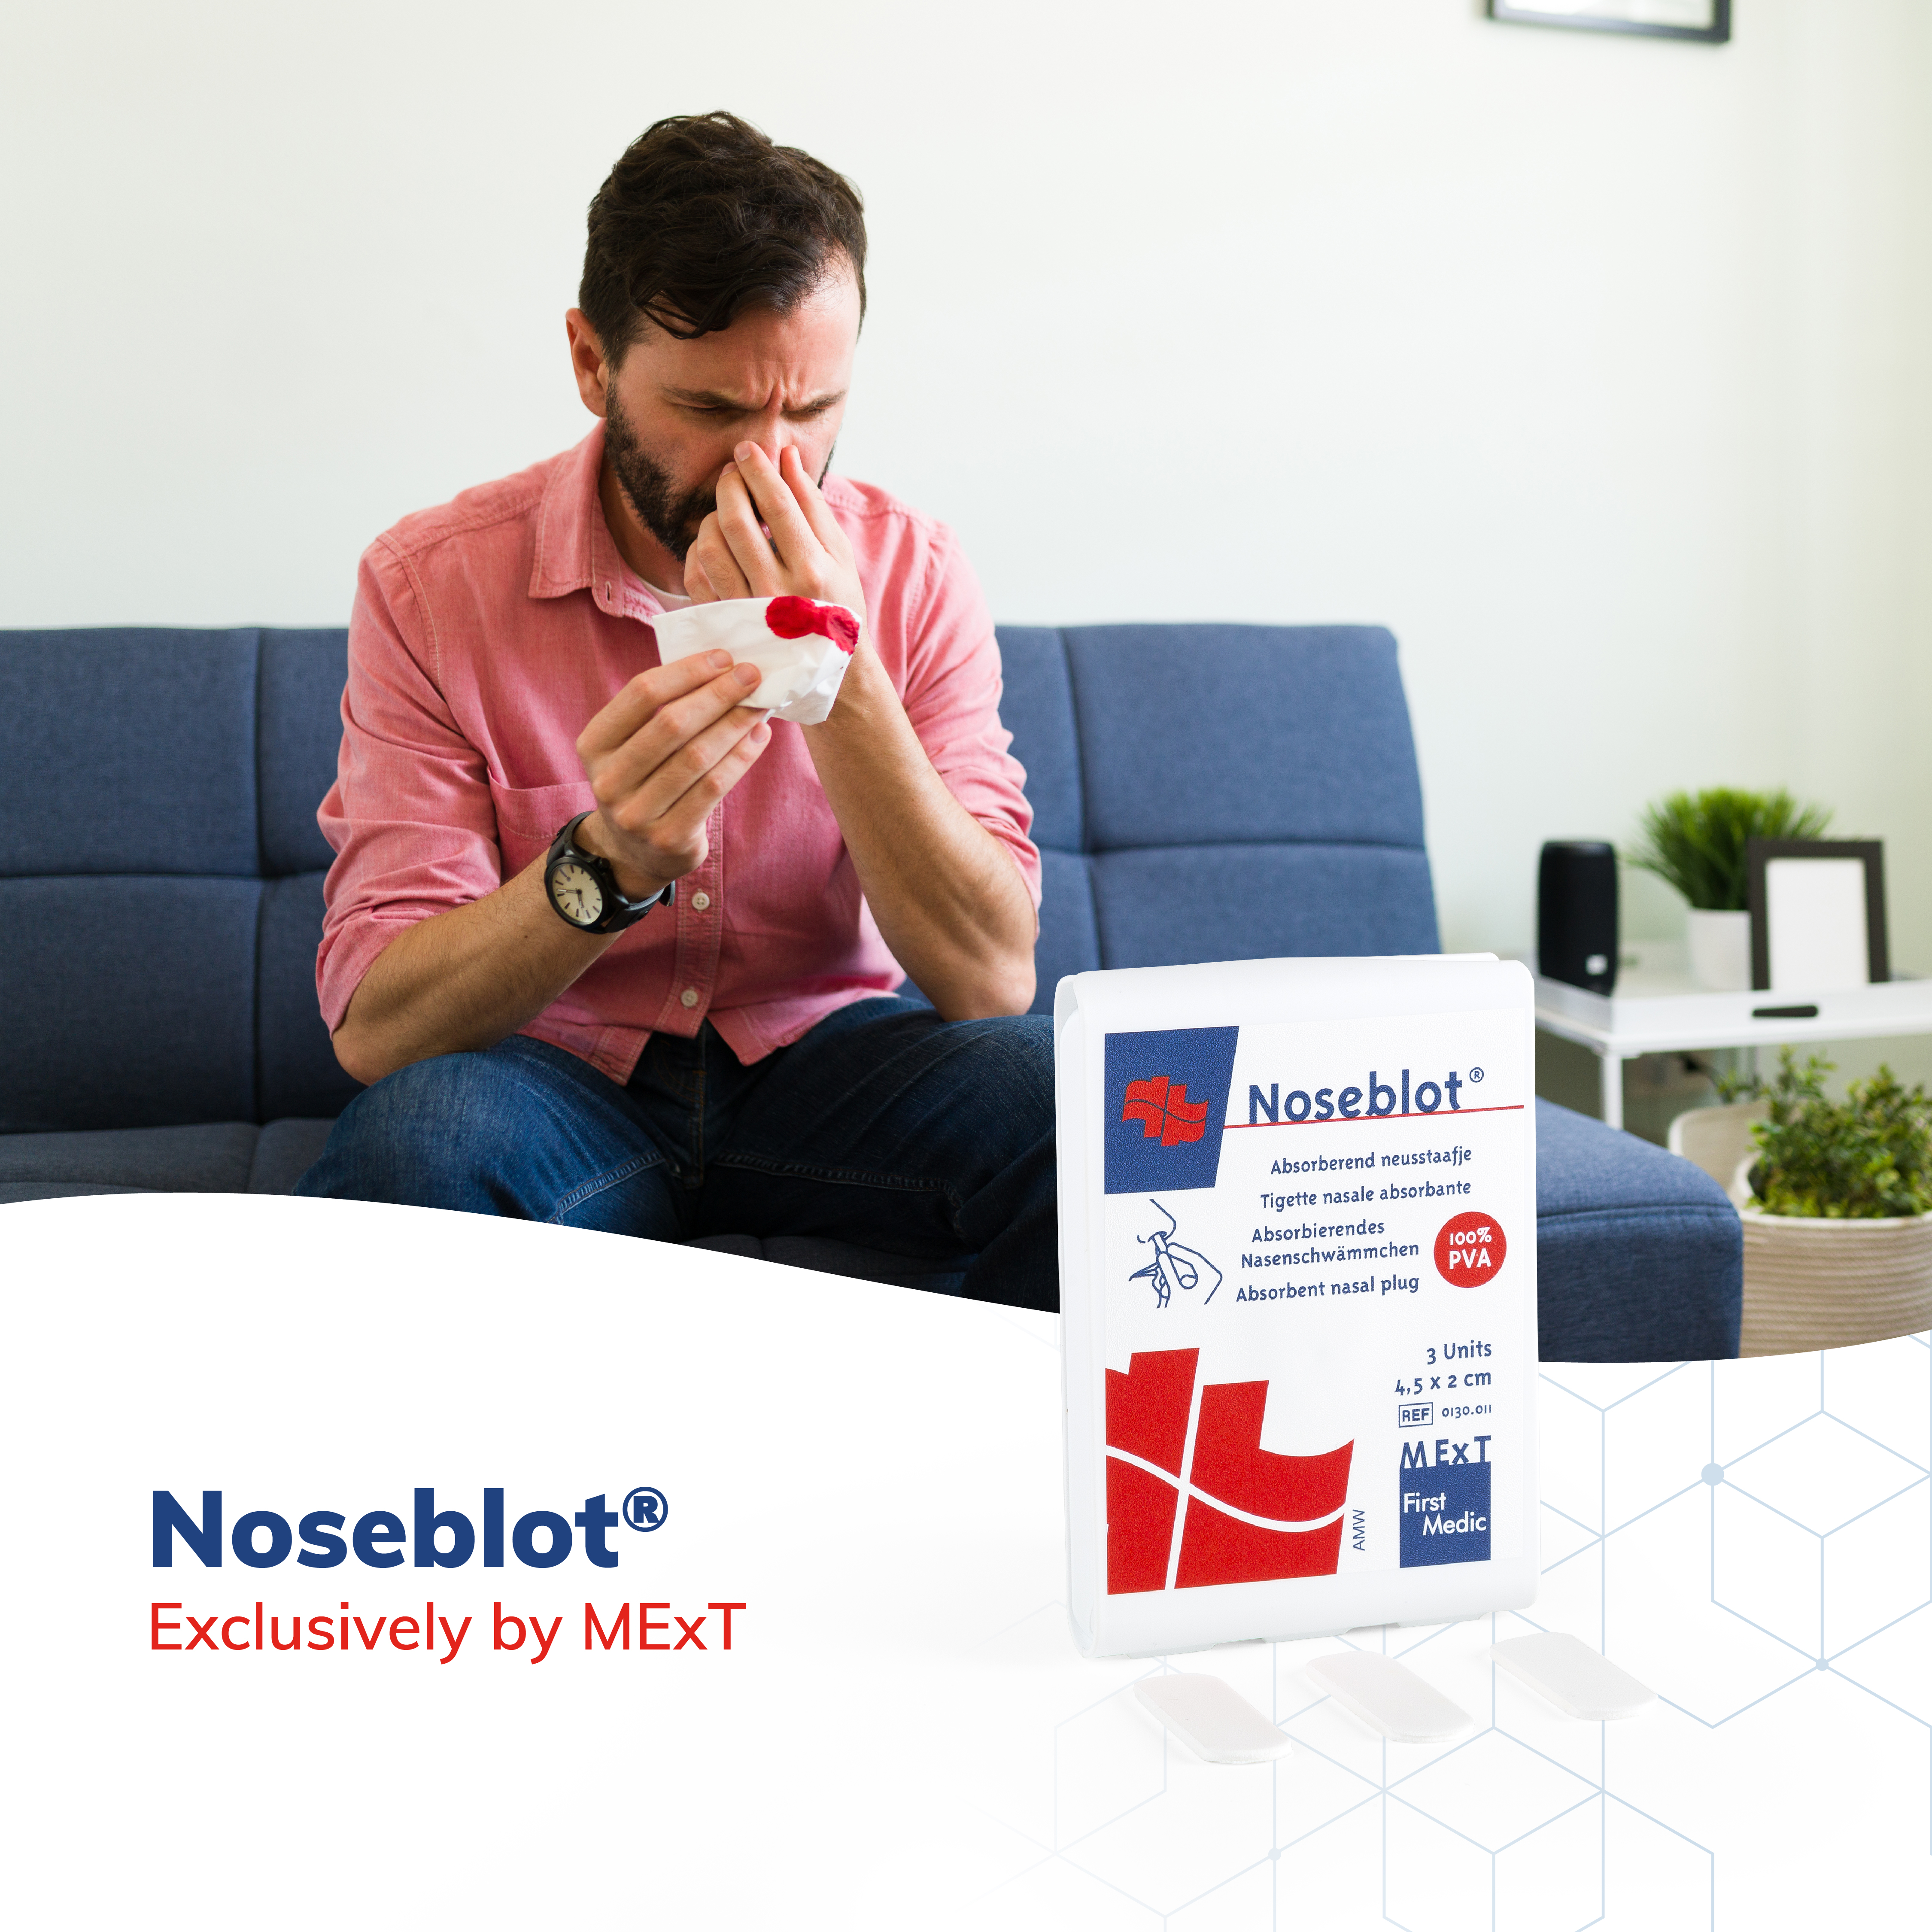 Noseblot, premiers secours en cas de saignement de nez